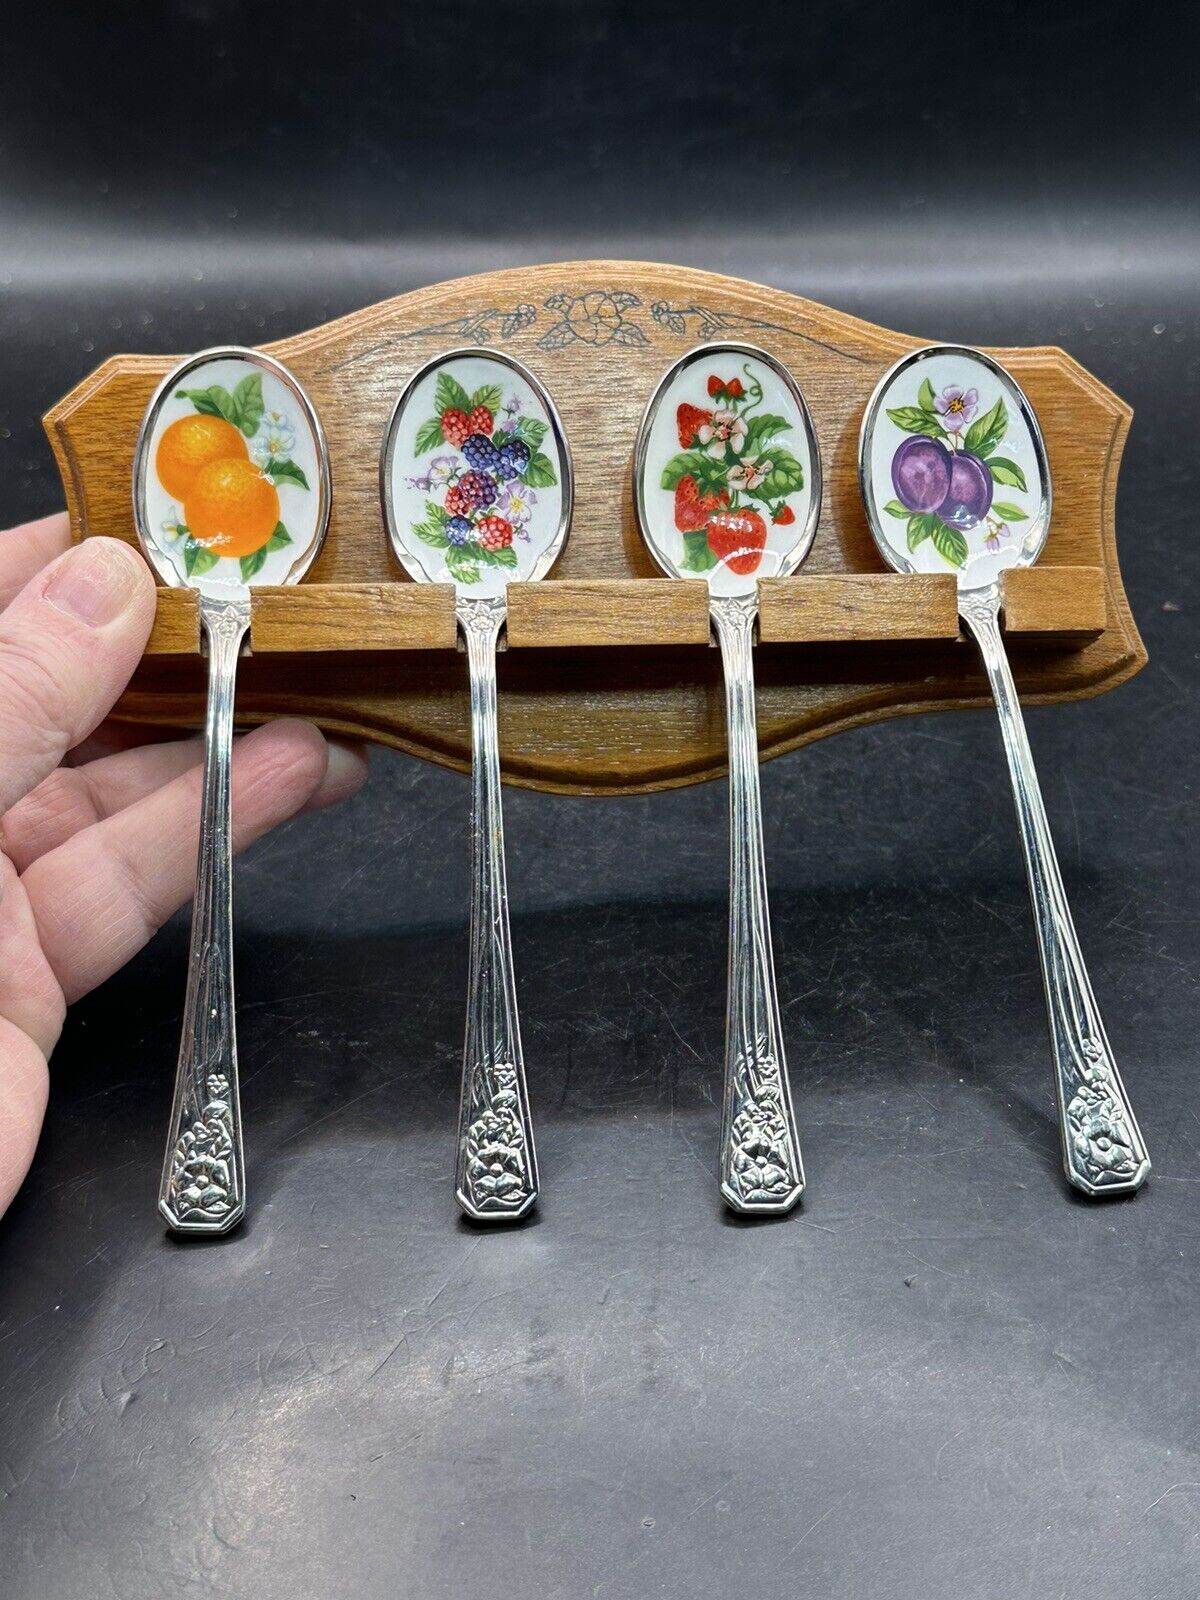 Vtg Avon Set Of 4 Enamel Fruit Jelly/Jam Spoons With Wood Holder